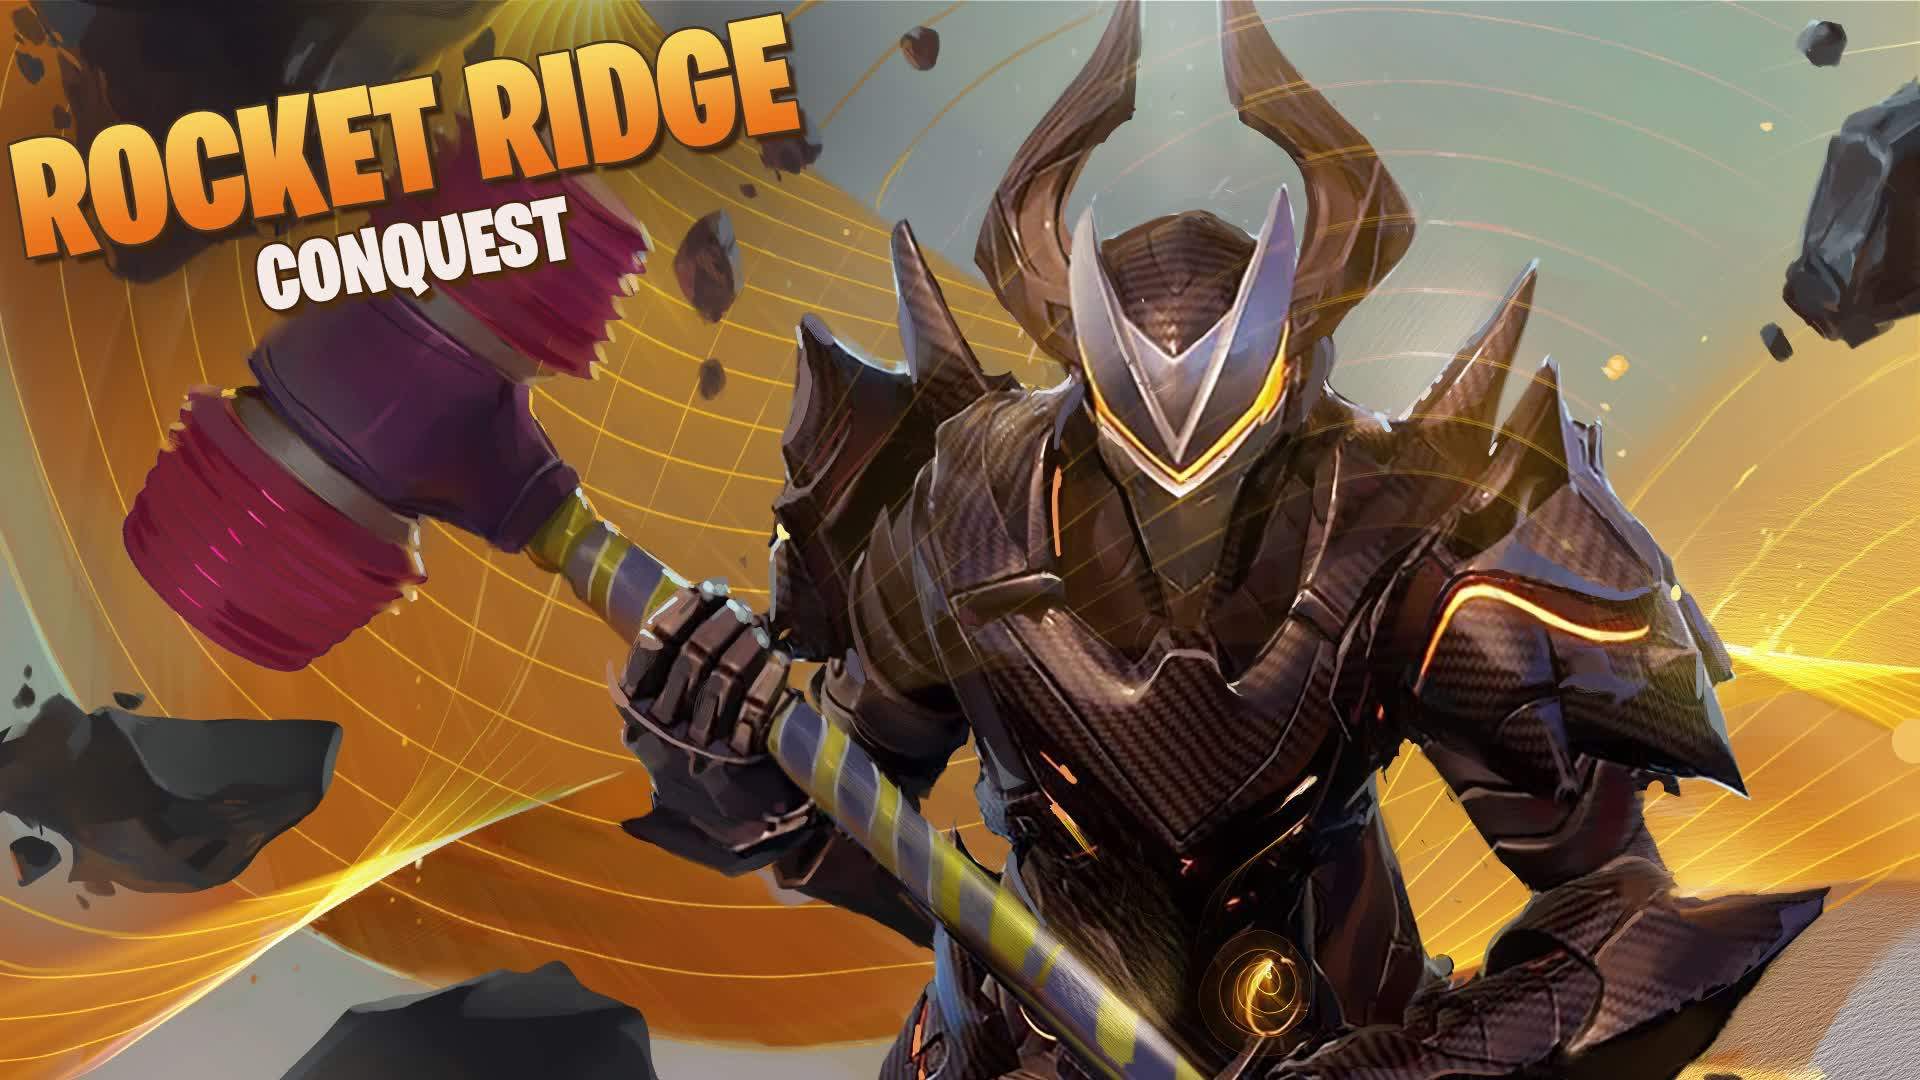 Rocket Ridge - Conquest